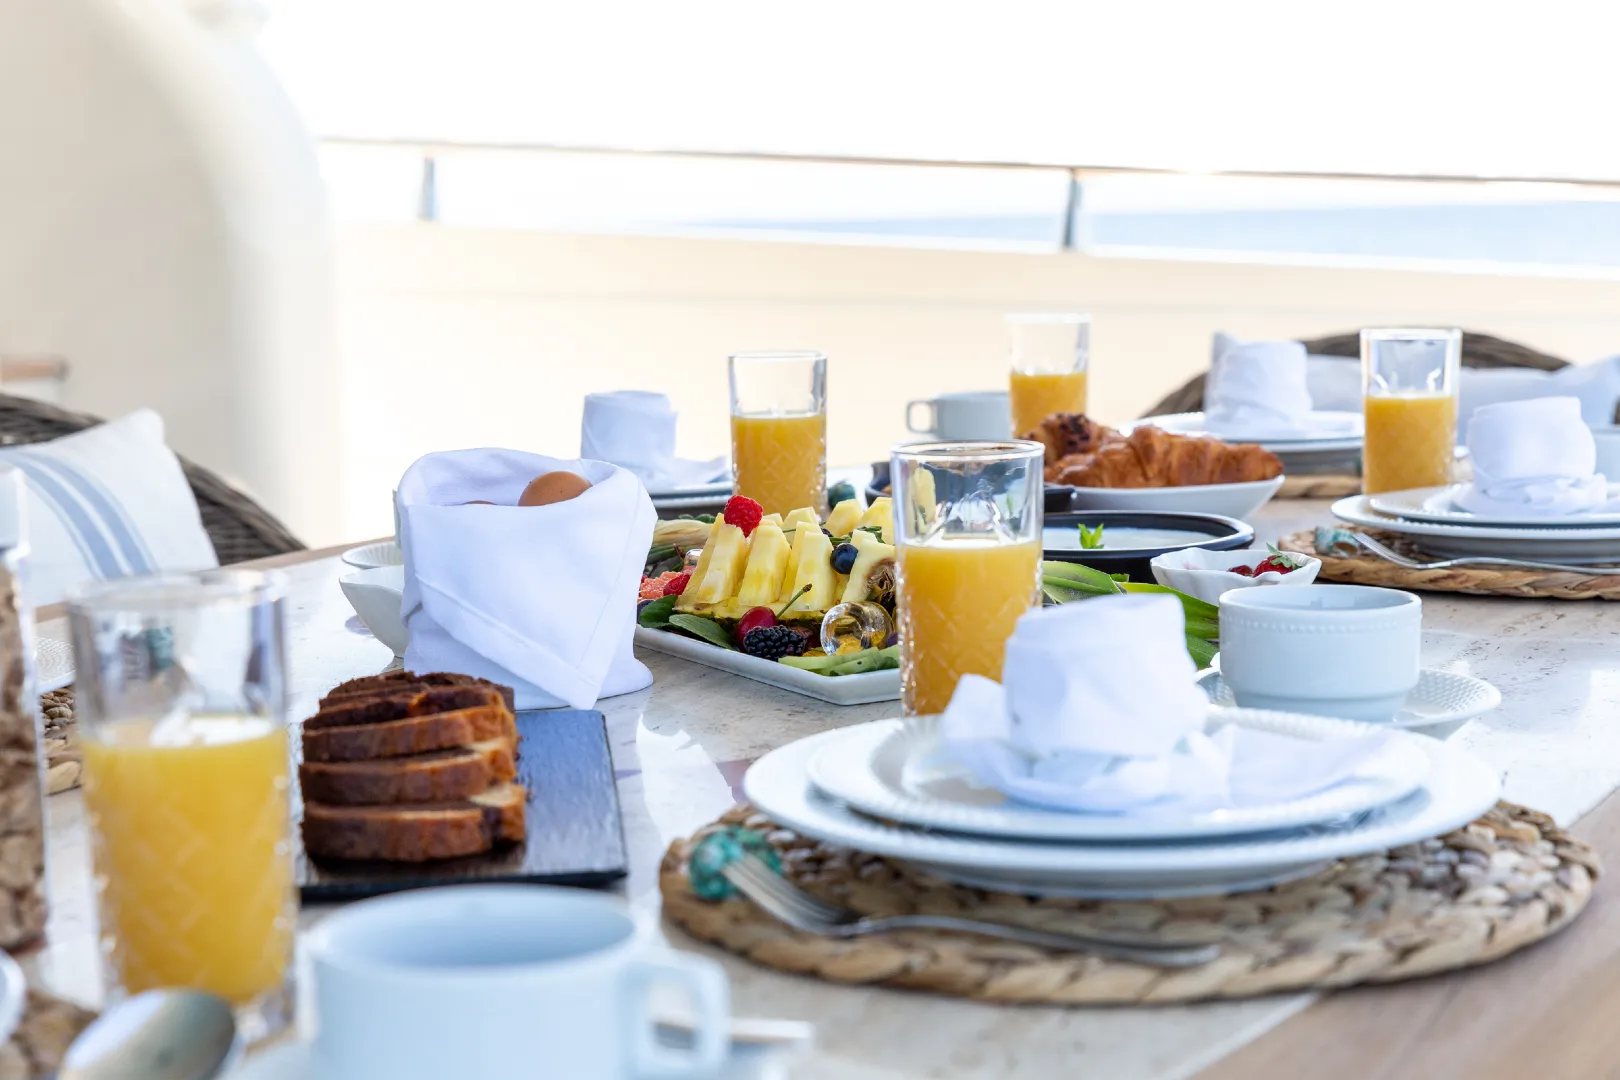 breakfast-setup-on-table